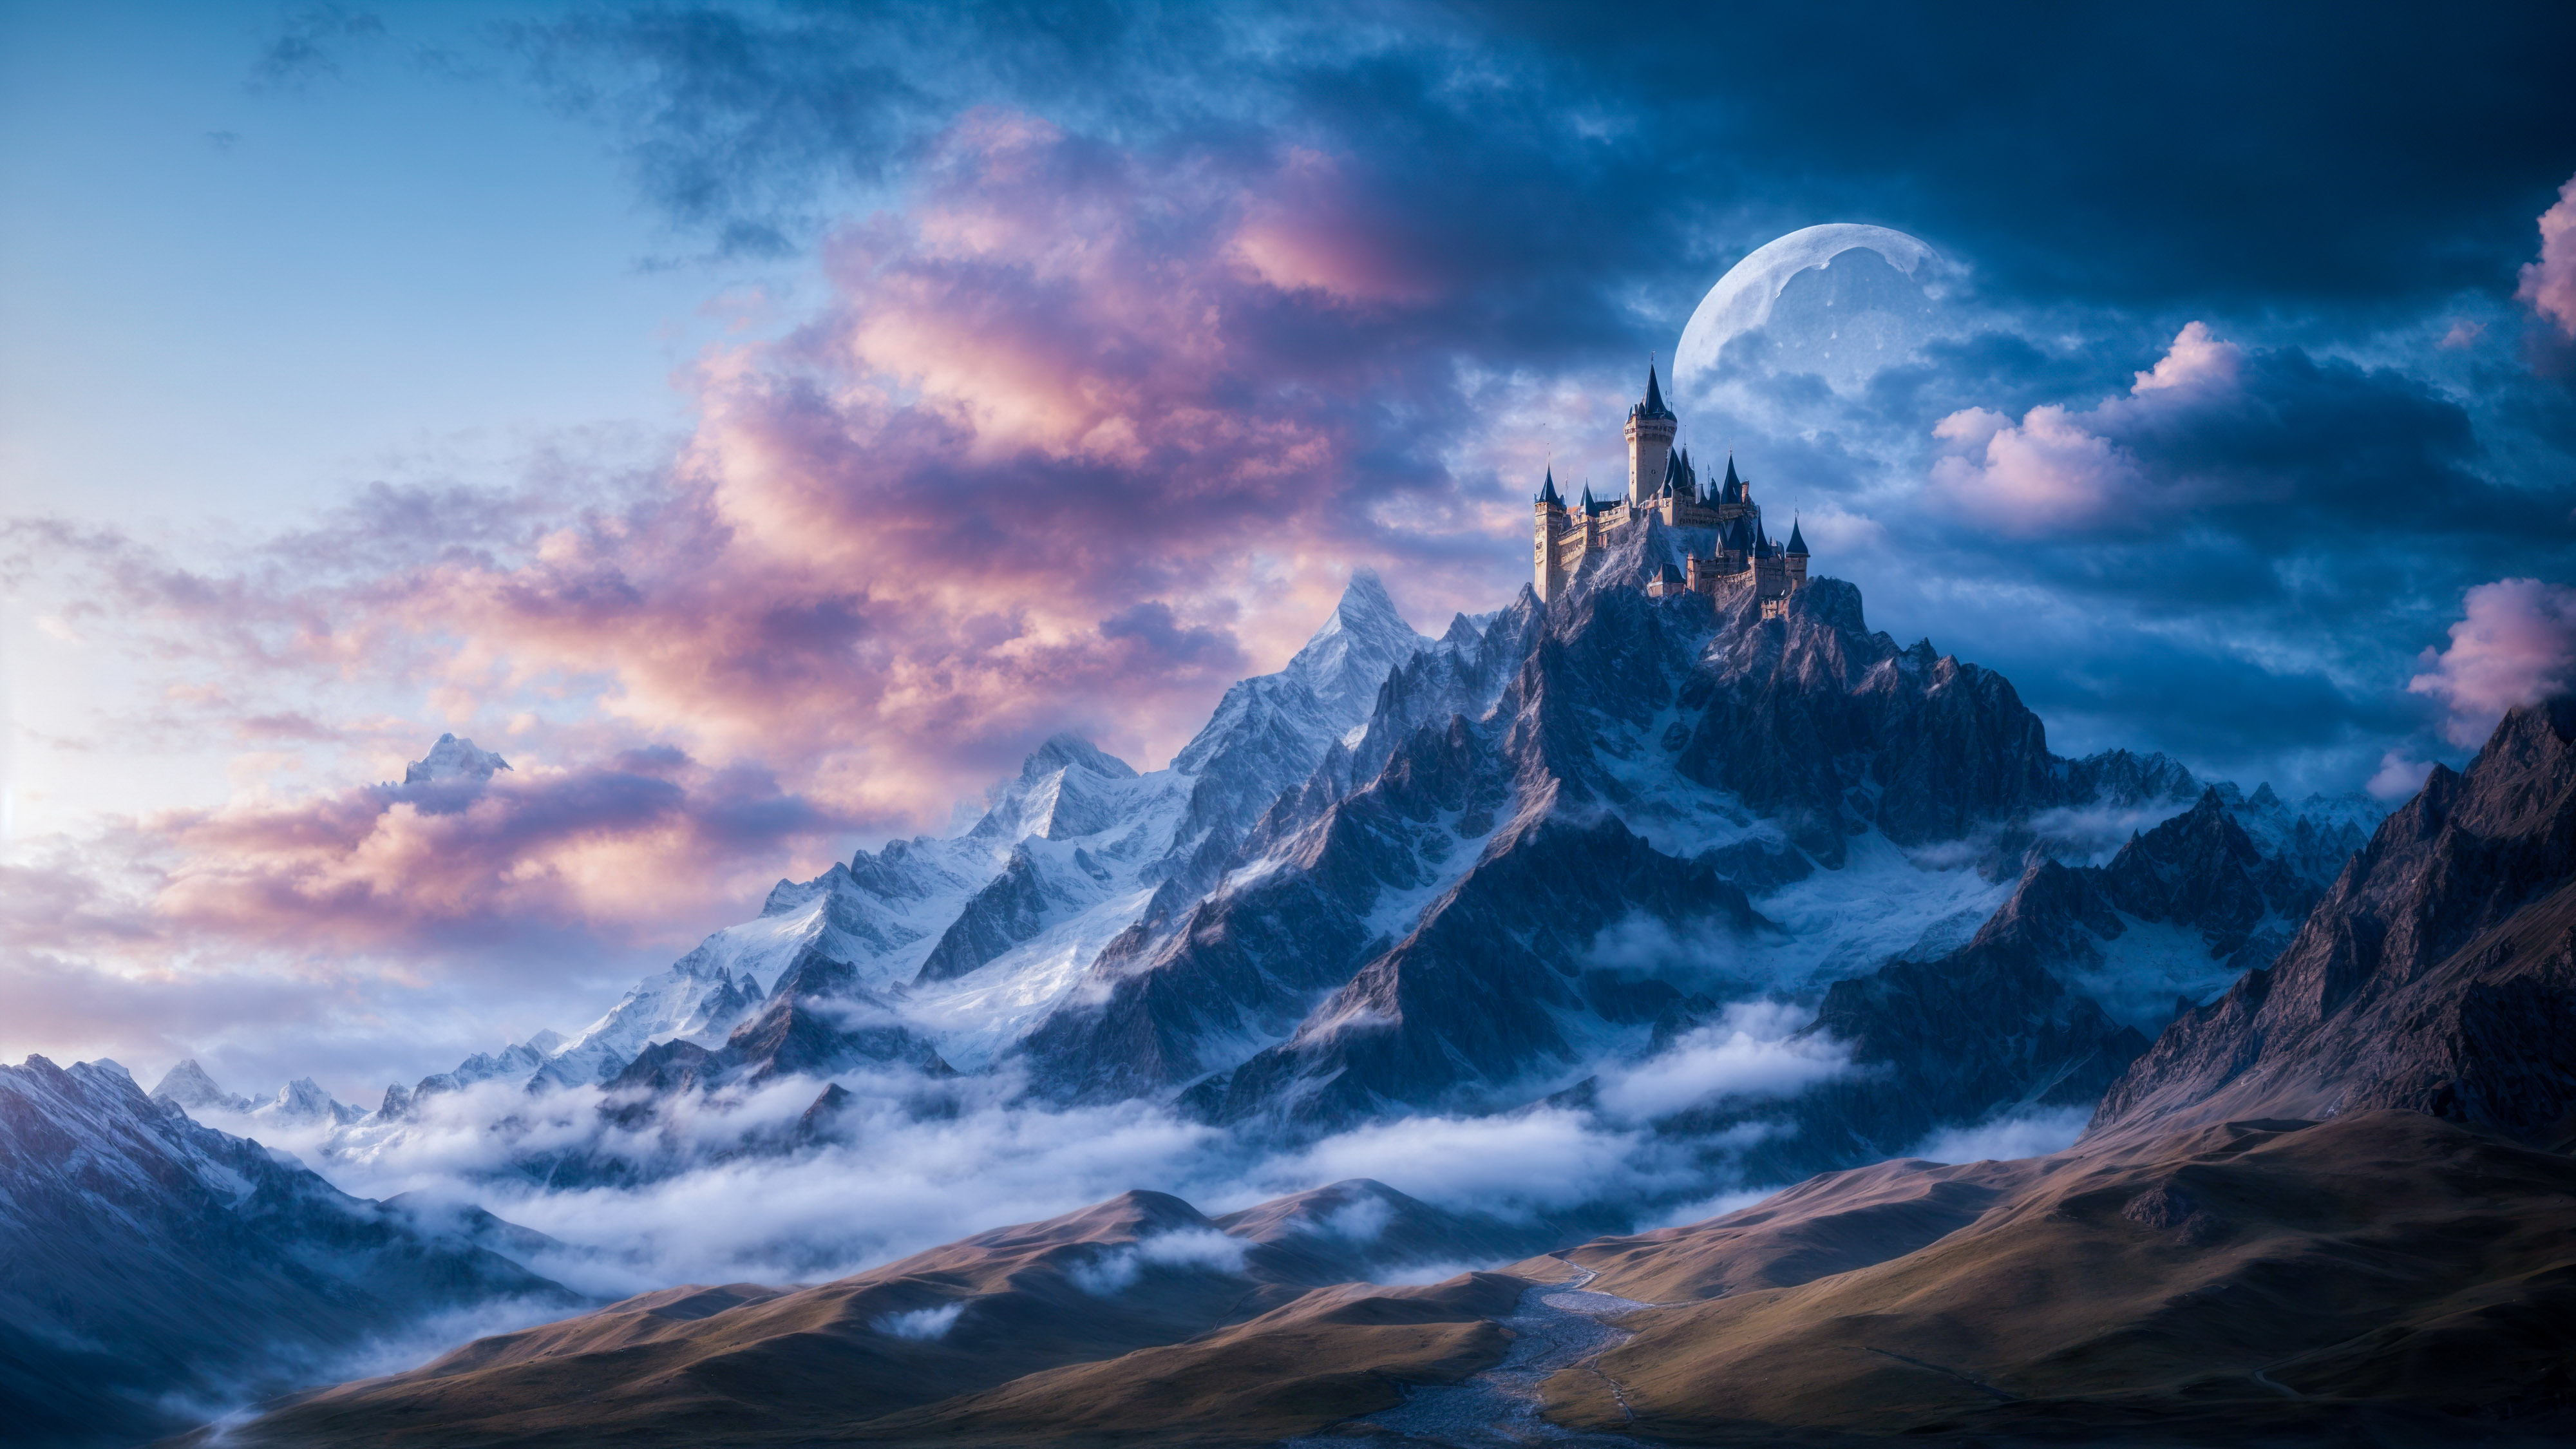 Plongez dans le monde de la fantaisie avec notre fond d'écran cool présentant une montagne avec un château et un dragon, sur fond de ciel magique et de lune.